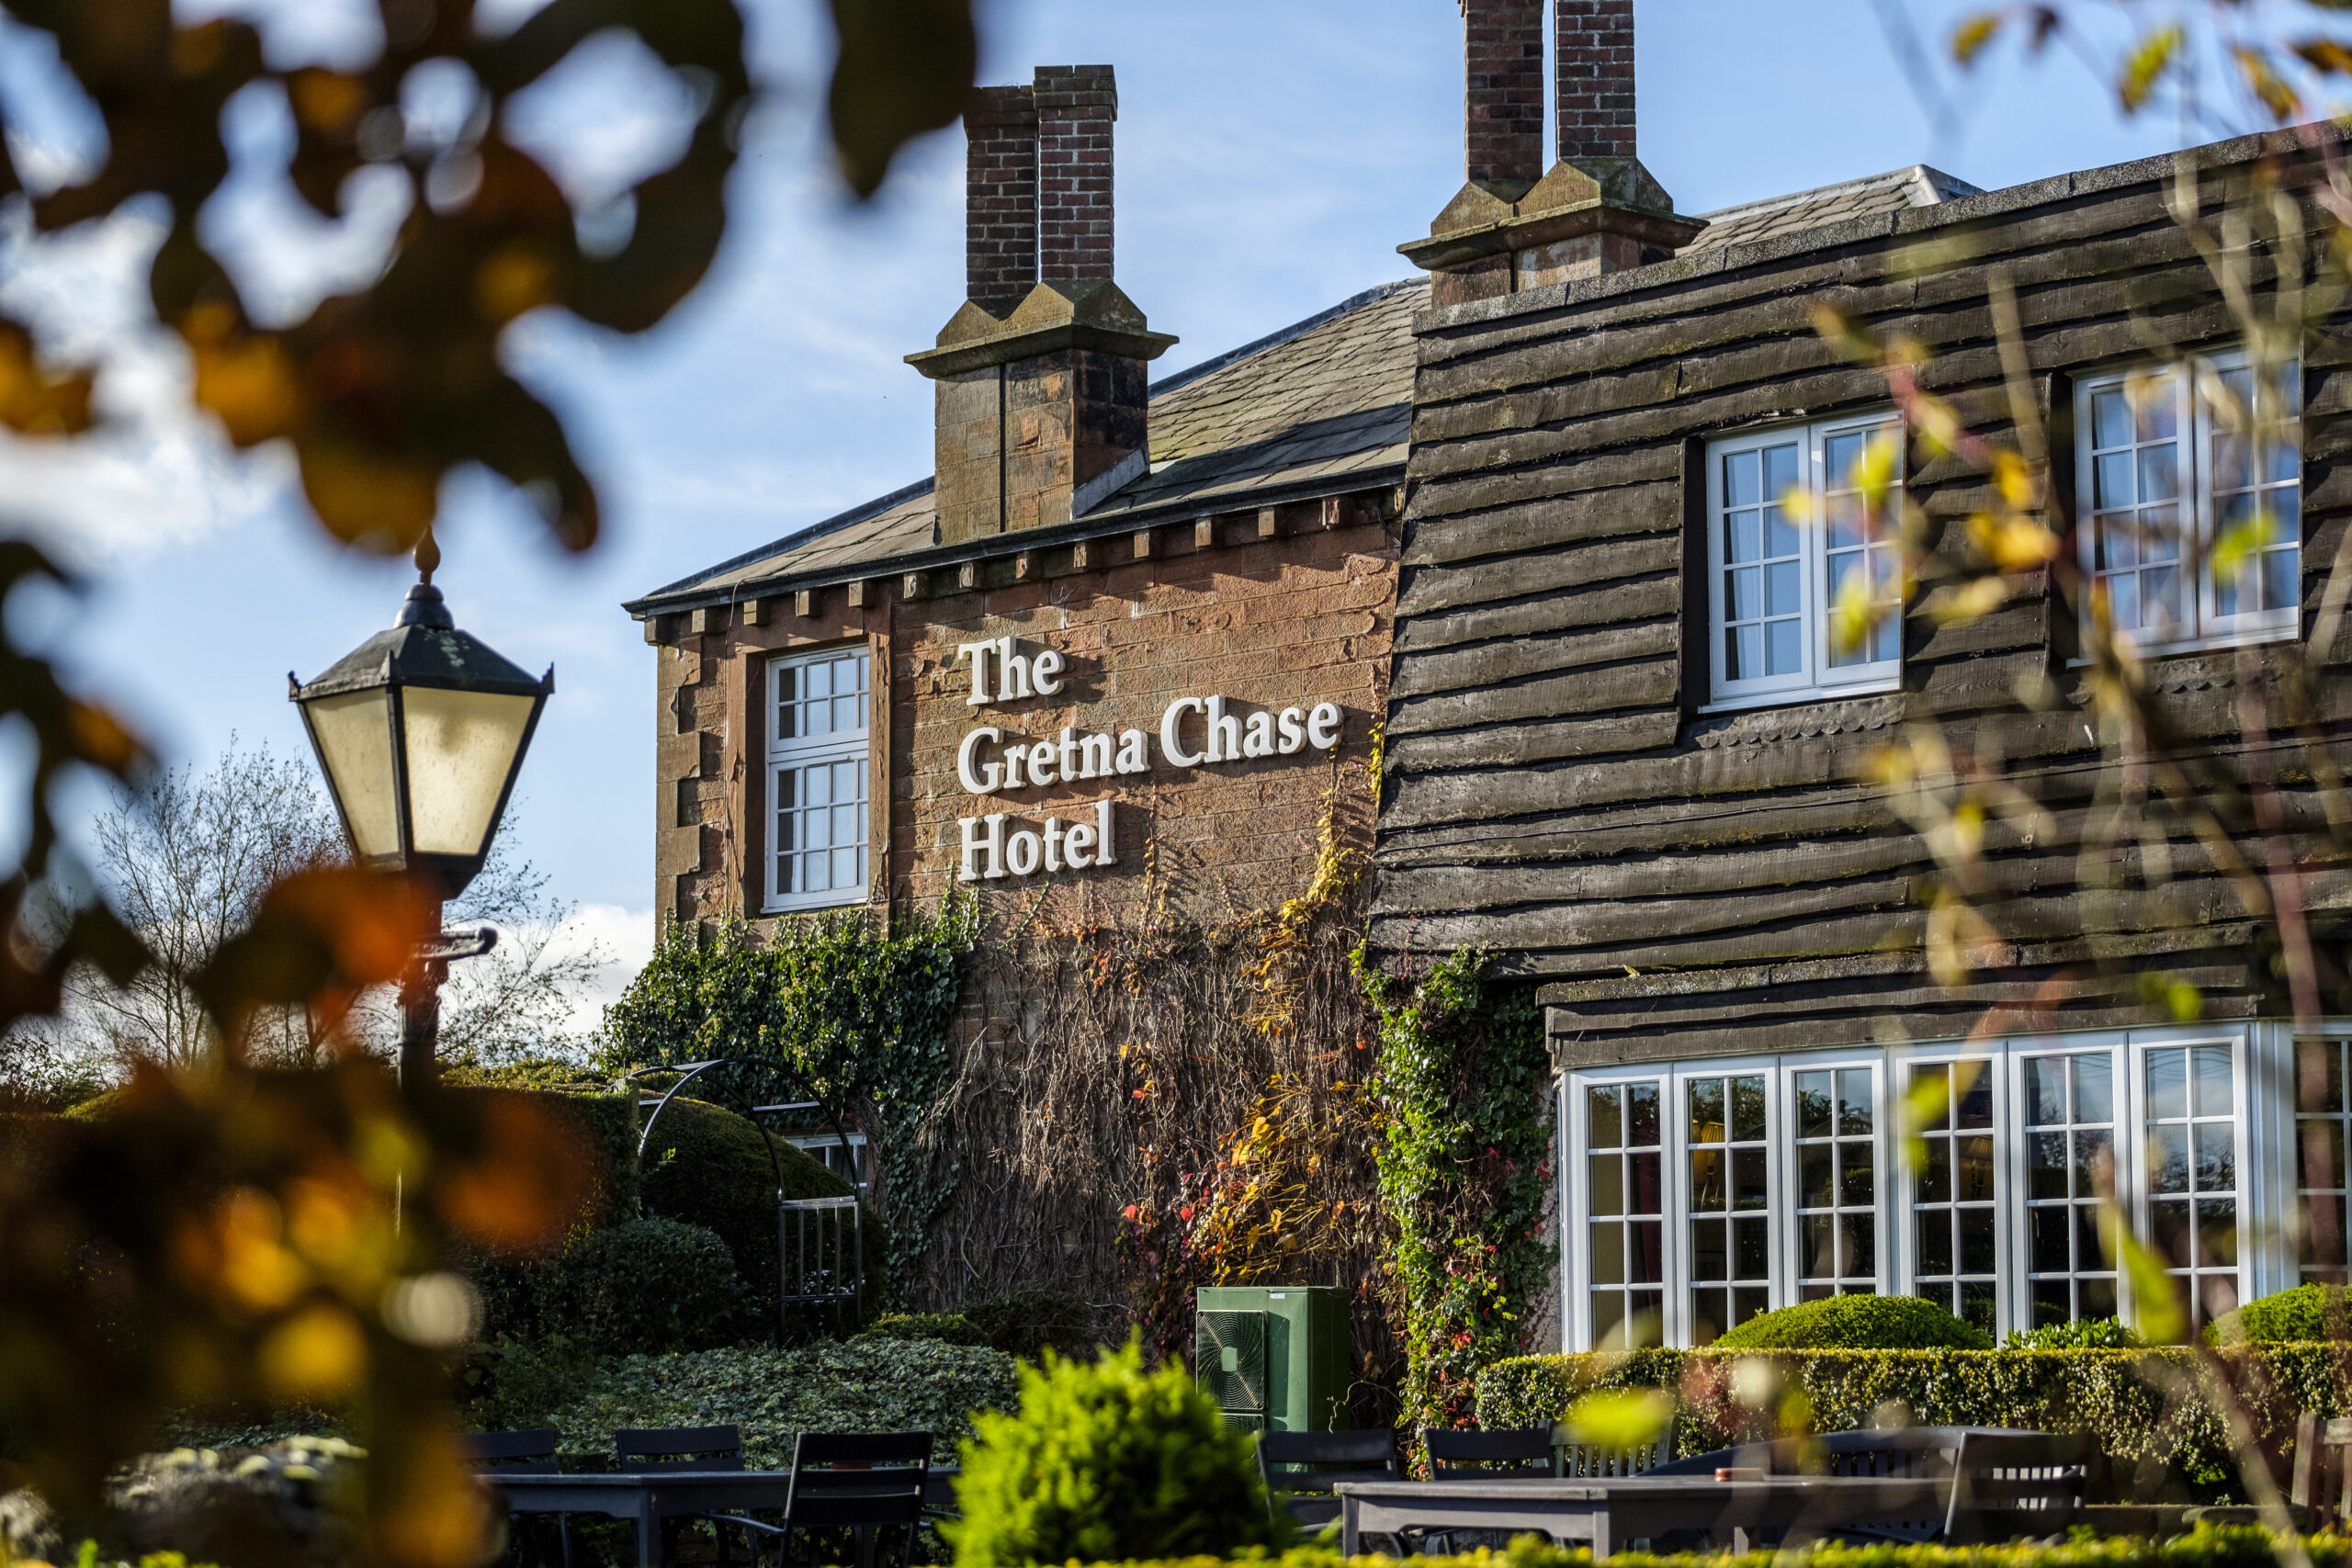 Fachada do The Gretna Chase Hotel, acomodação do início do século 19,